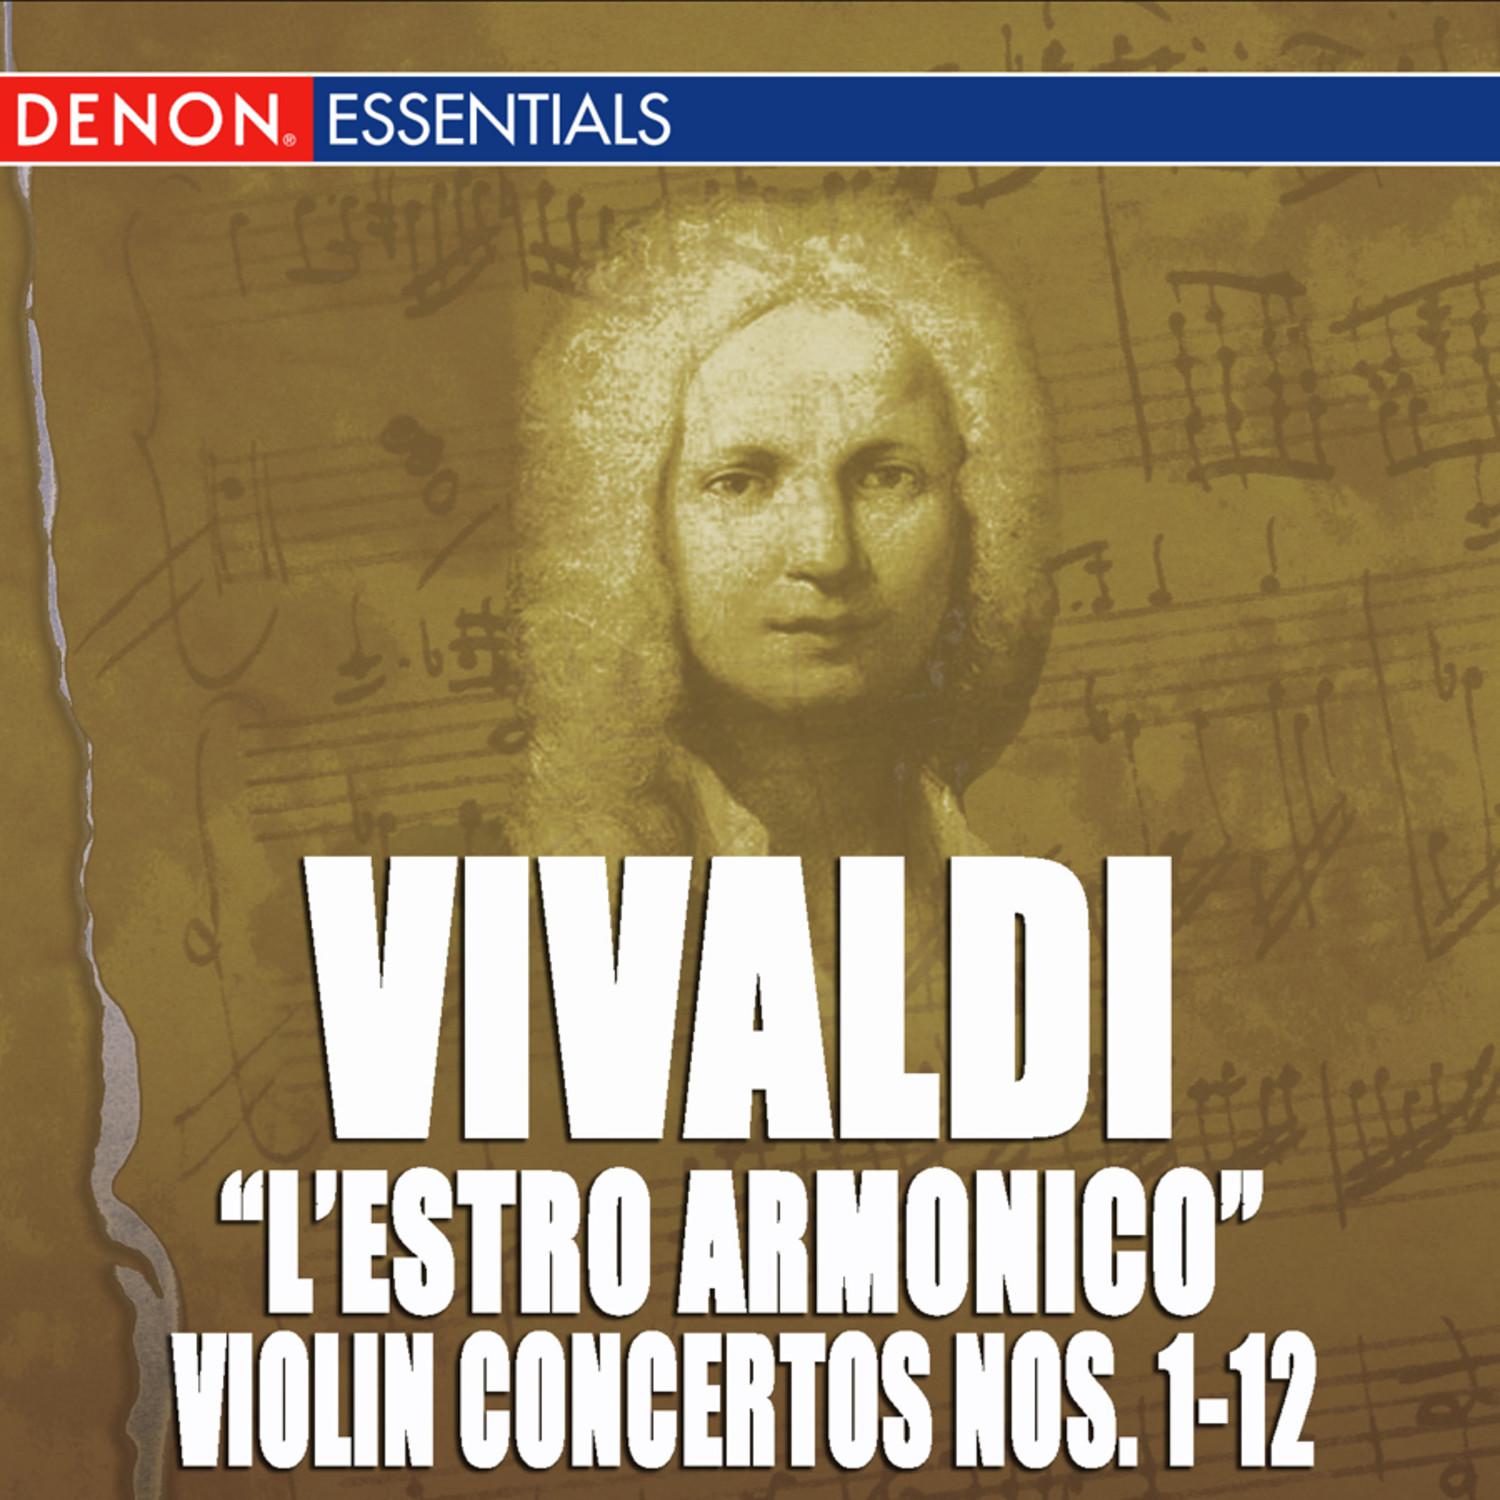 Concerto for 4 Violins, Cello, Strings & B.c. No. 1 in D Minor, Op. 3 RV 549: III. Allegro